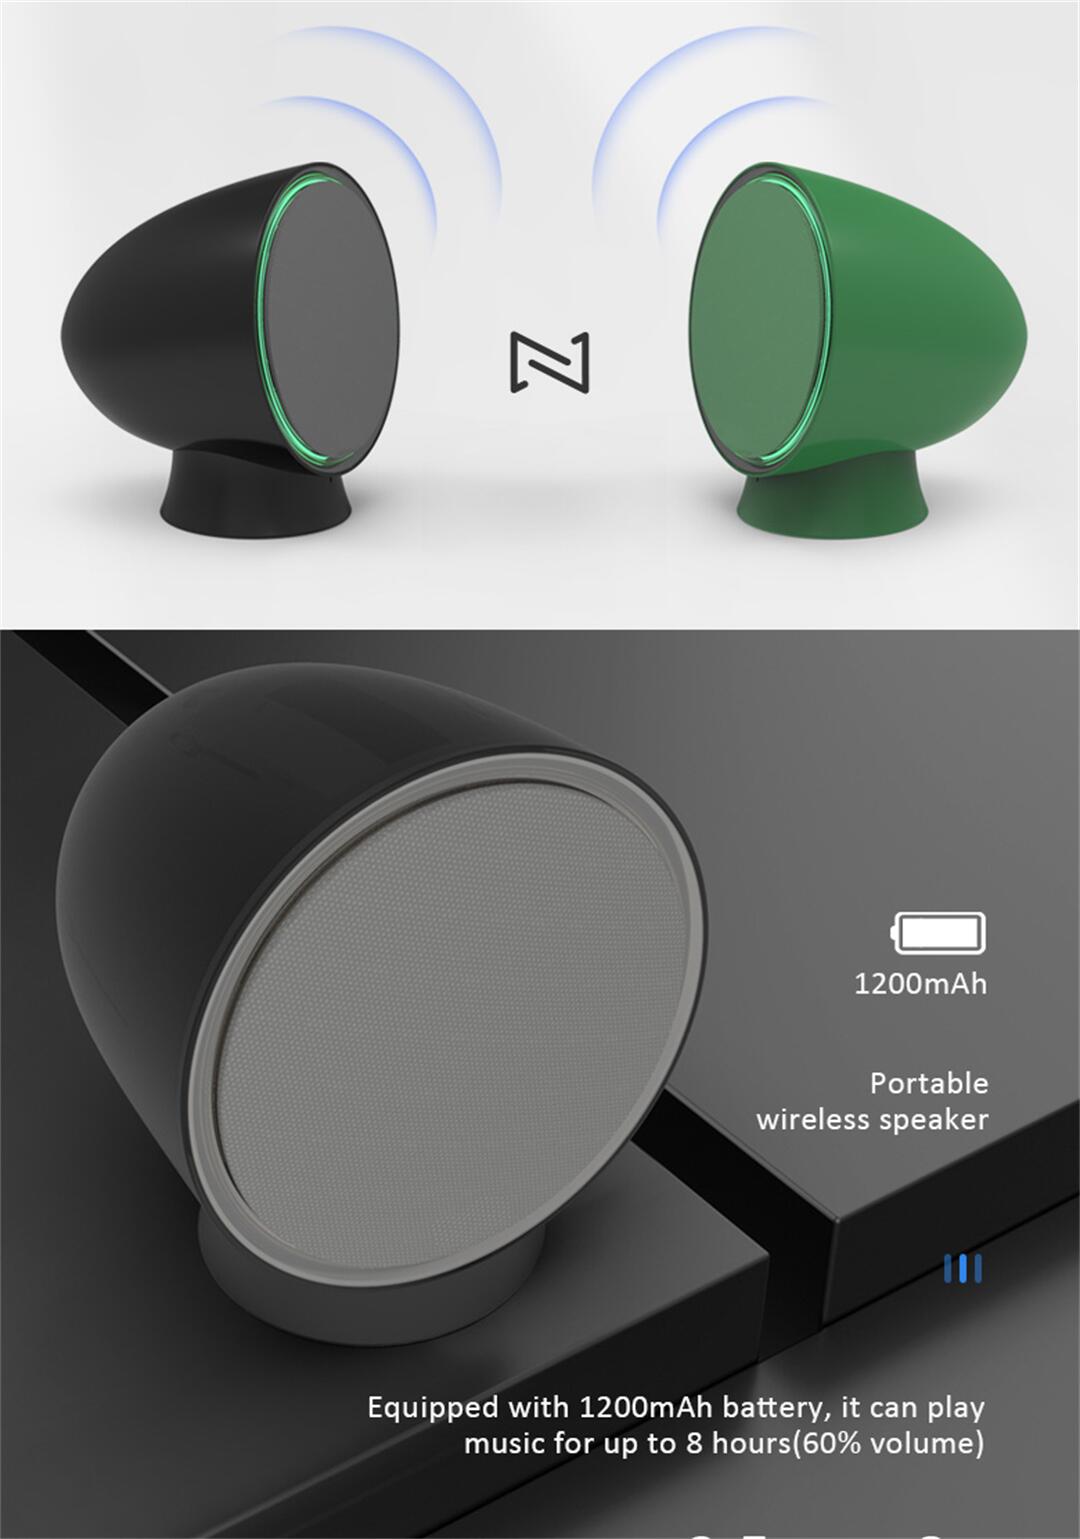 Mini speaker H (9).jpg